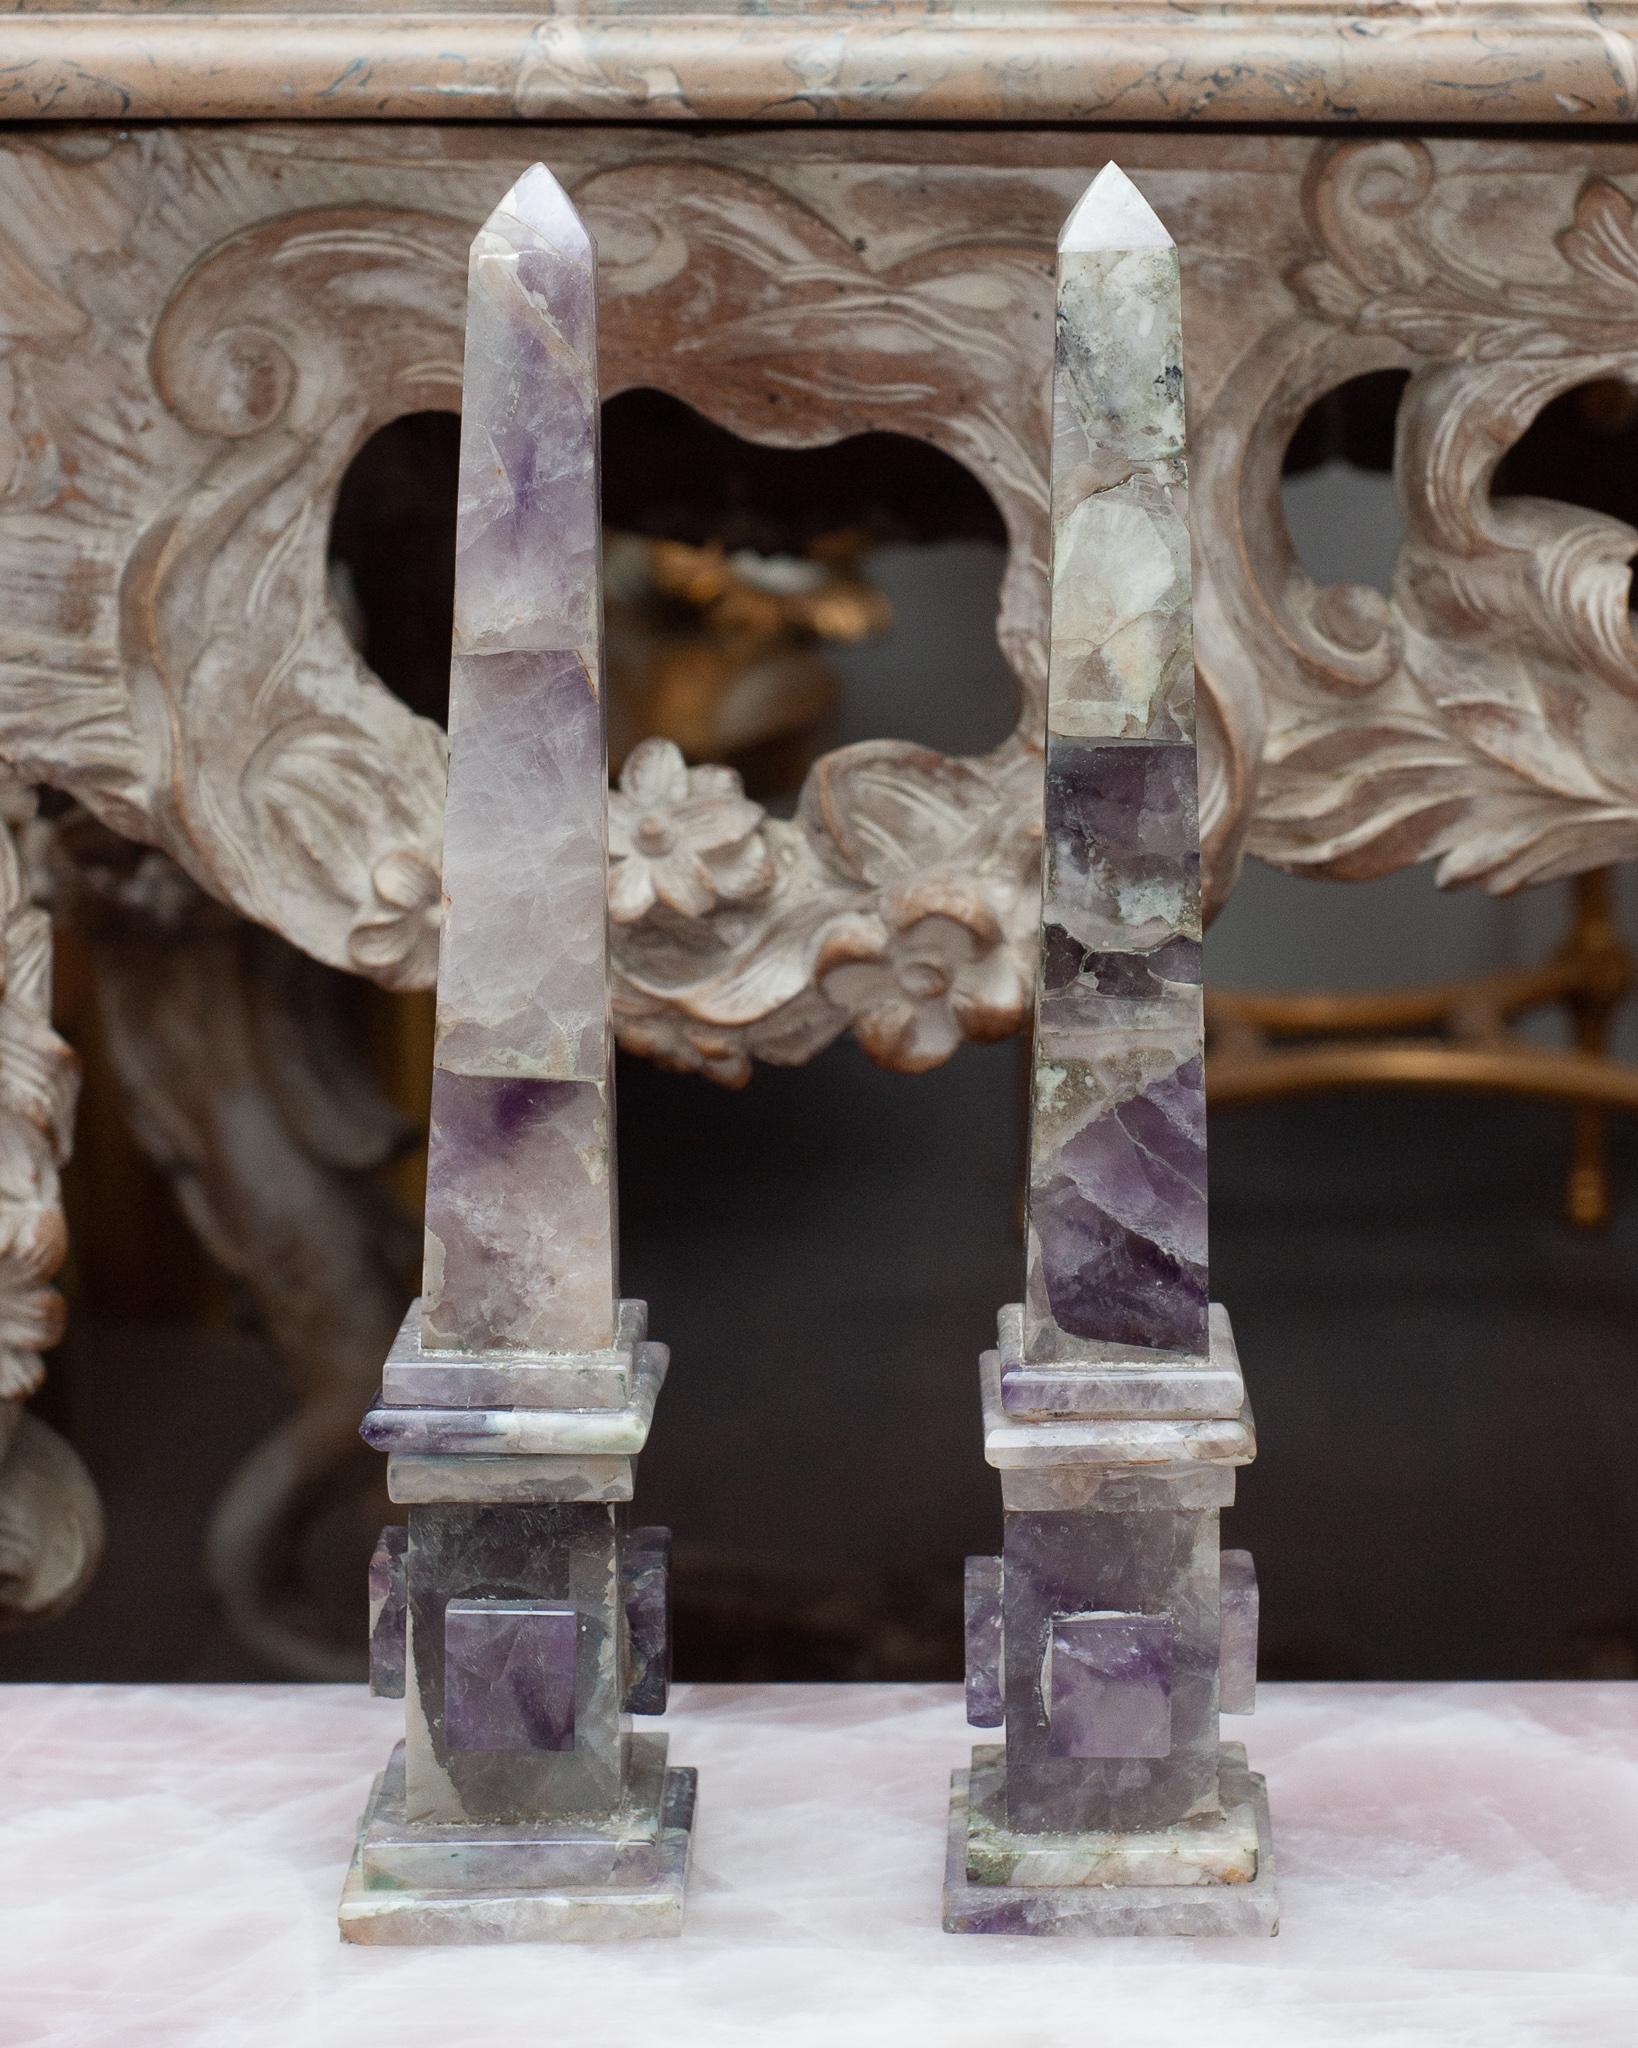 Dieses spektakuläre Obeliskenpaar ist aus Amethyst gefertigt,  ein lavendelfarbener bis violetter, durchscheinender Halbedelstein, der eine Form von Quarz ist, die an vielen Orten der Welt vorkommt und sich als transparente, endständige Kristalle in